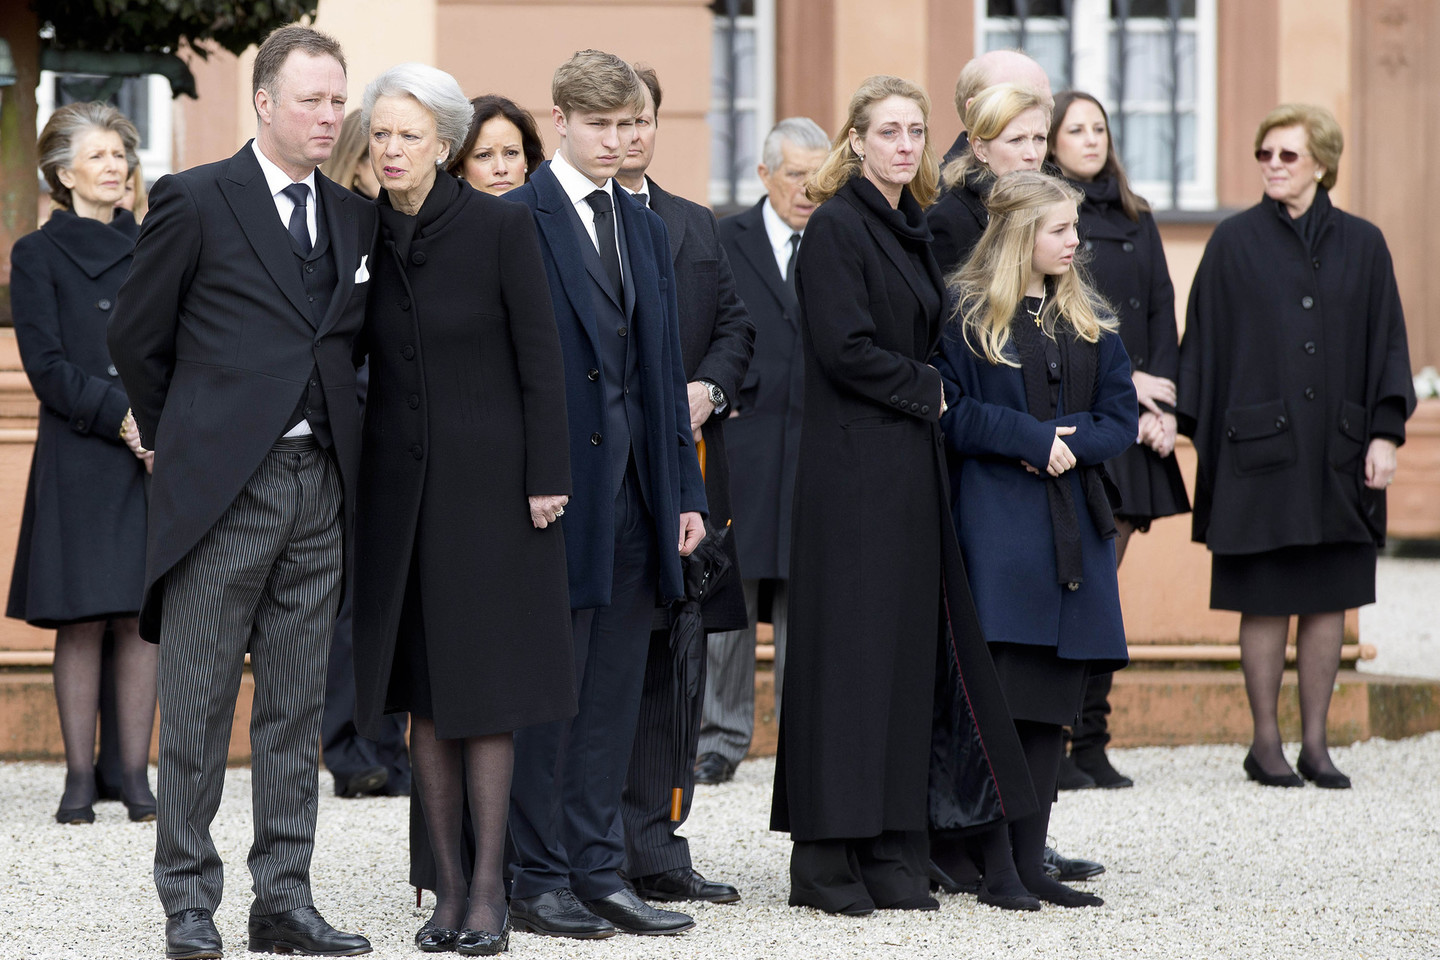 Karališkos laidotuvės Danijoje: į paskutinę kelionę palydėtas princas Richardas.<br>ViDA Press nuotr.